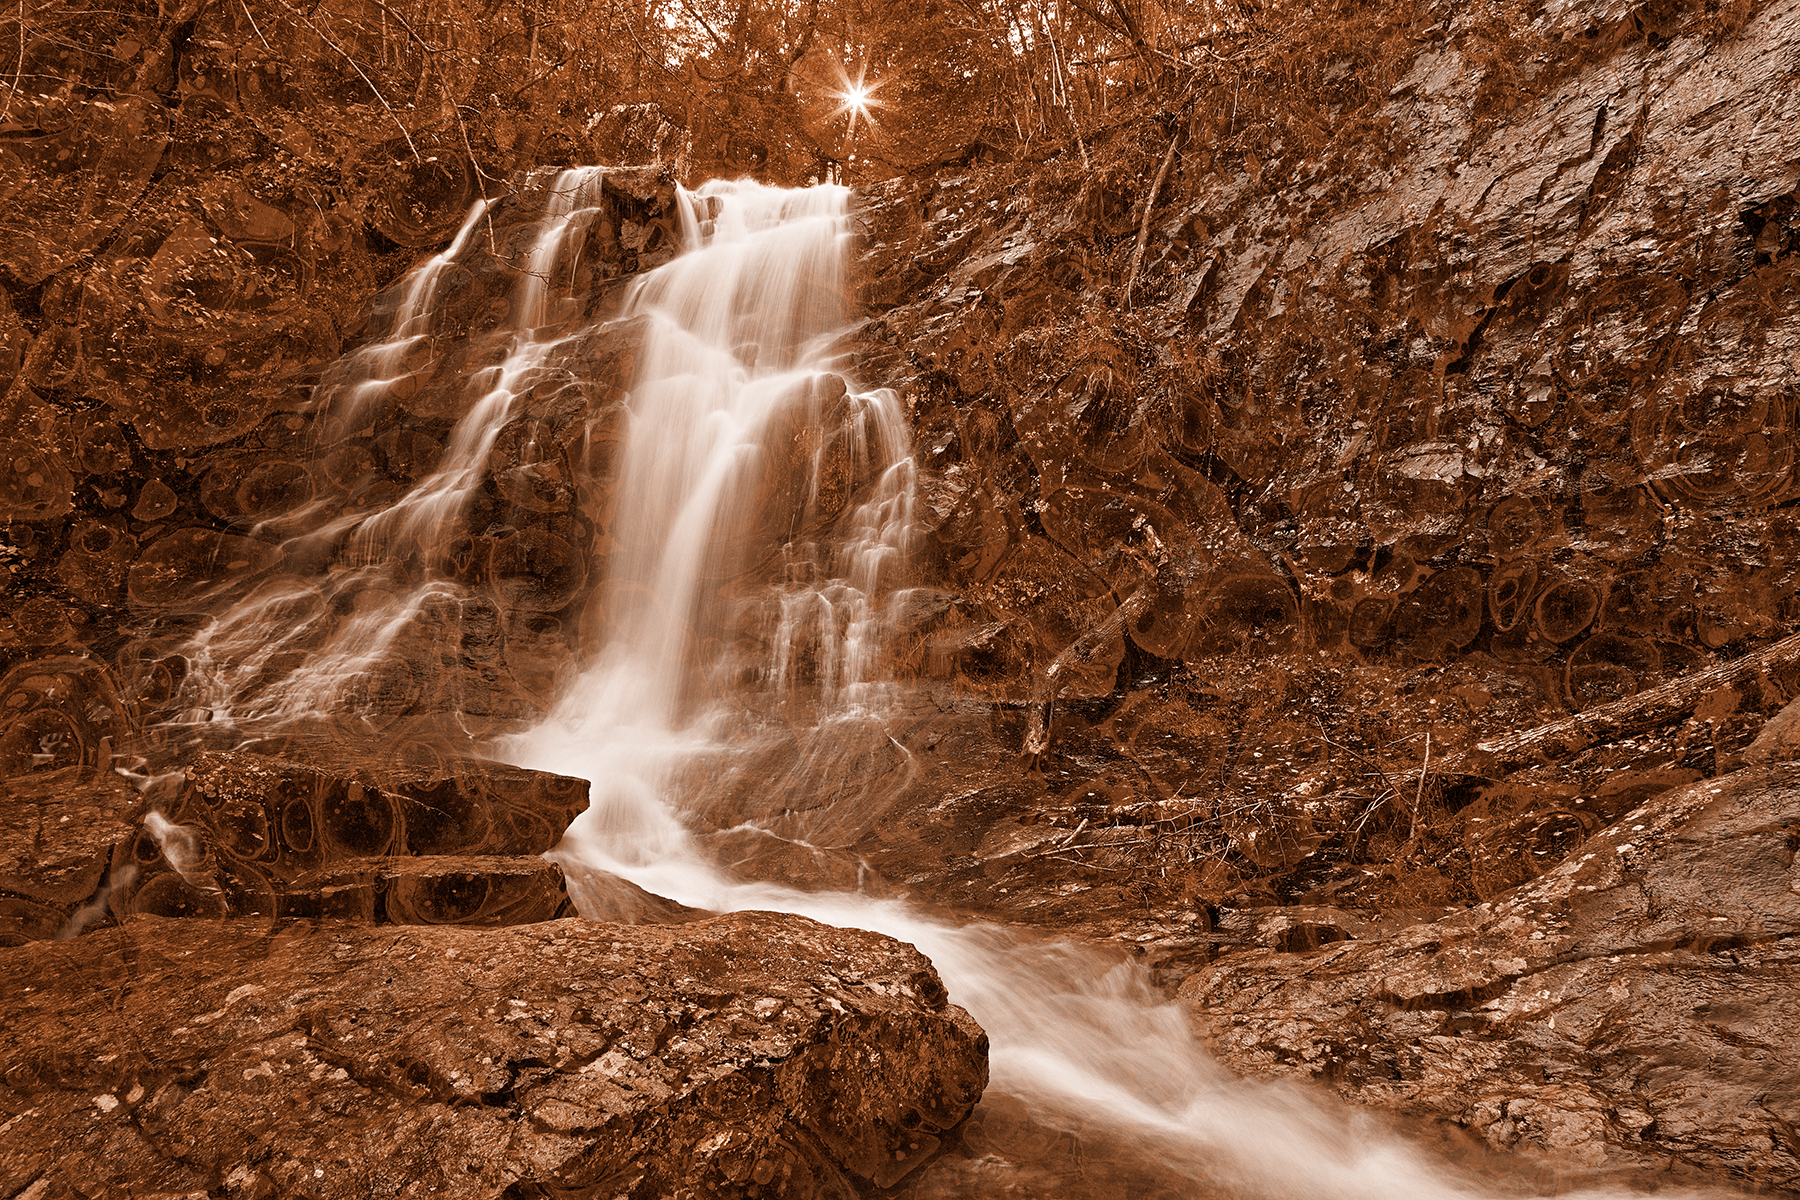 Marbled sunset waterfall - sepia nostalgia photo